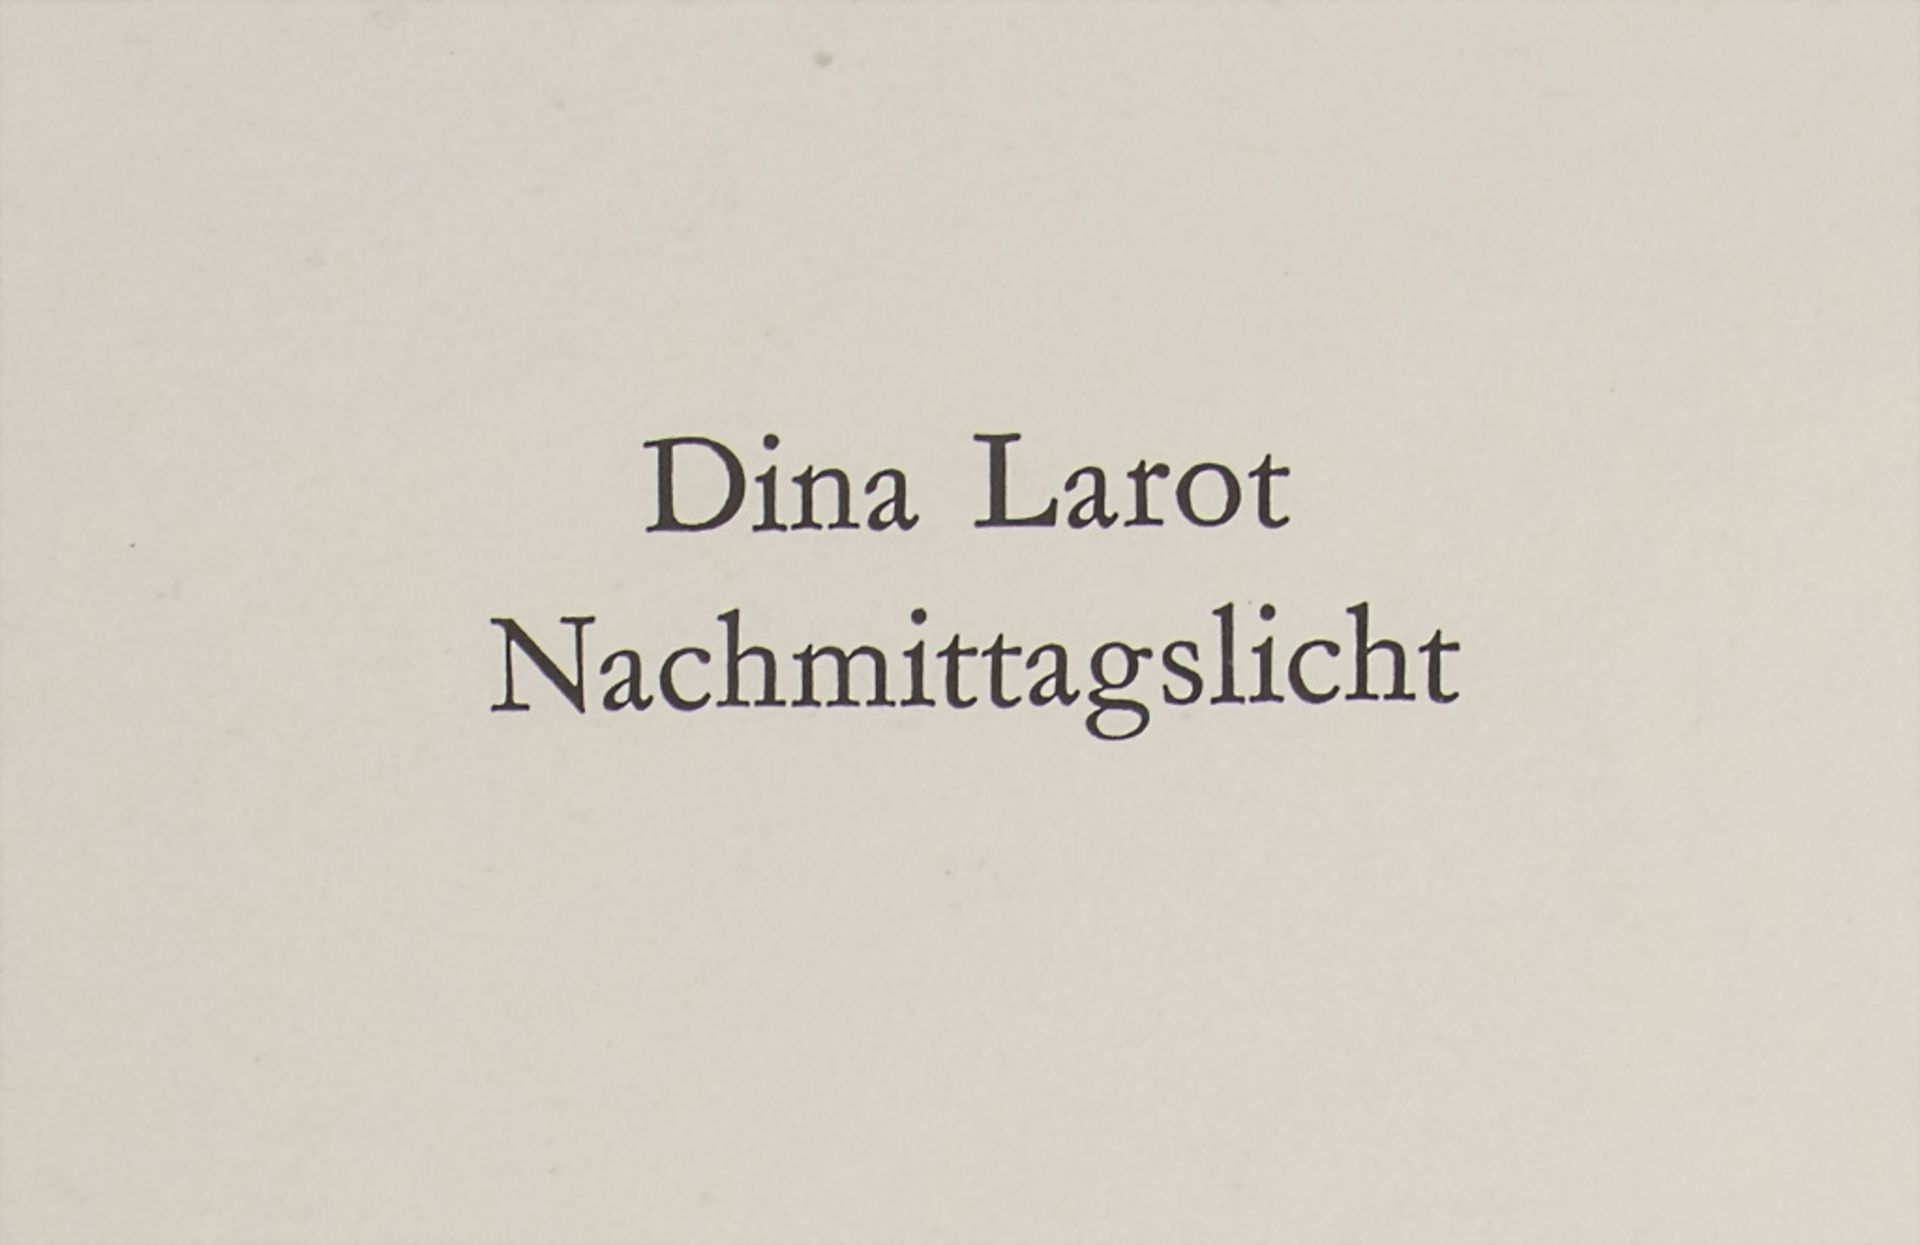 Dina Larot: 'Nachmittagslicht' / 'Afternoon-Light', Wien, 1977 - Image 4 of 7